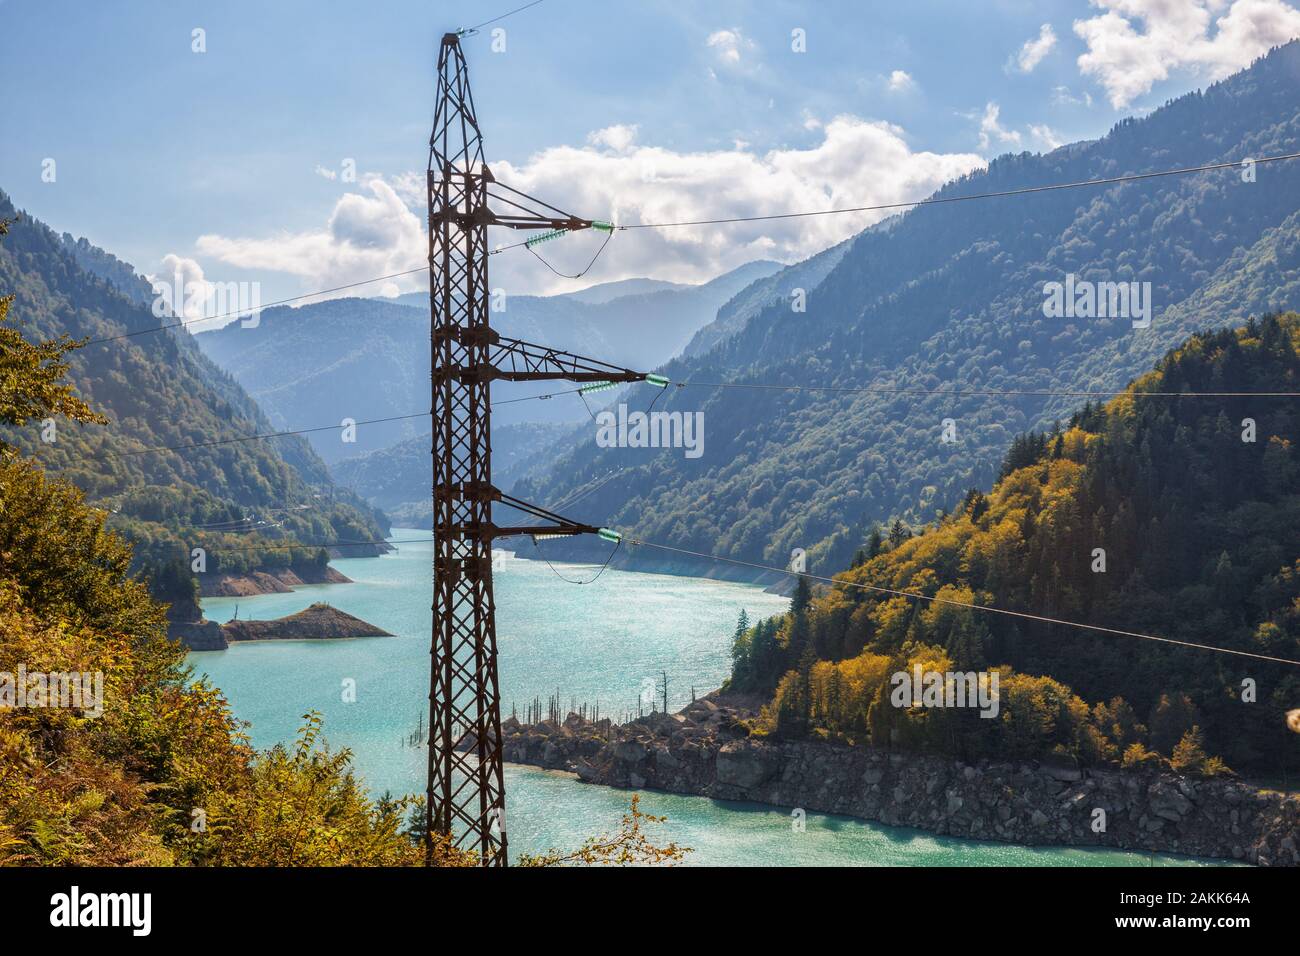 Tour haute tension dans les montagnes du Caucase. L'énergie hydraulique, ligne de transmission sur pylône de fond de réservoir hydroélectrique Enguri Enguri (H Banque D'Images